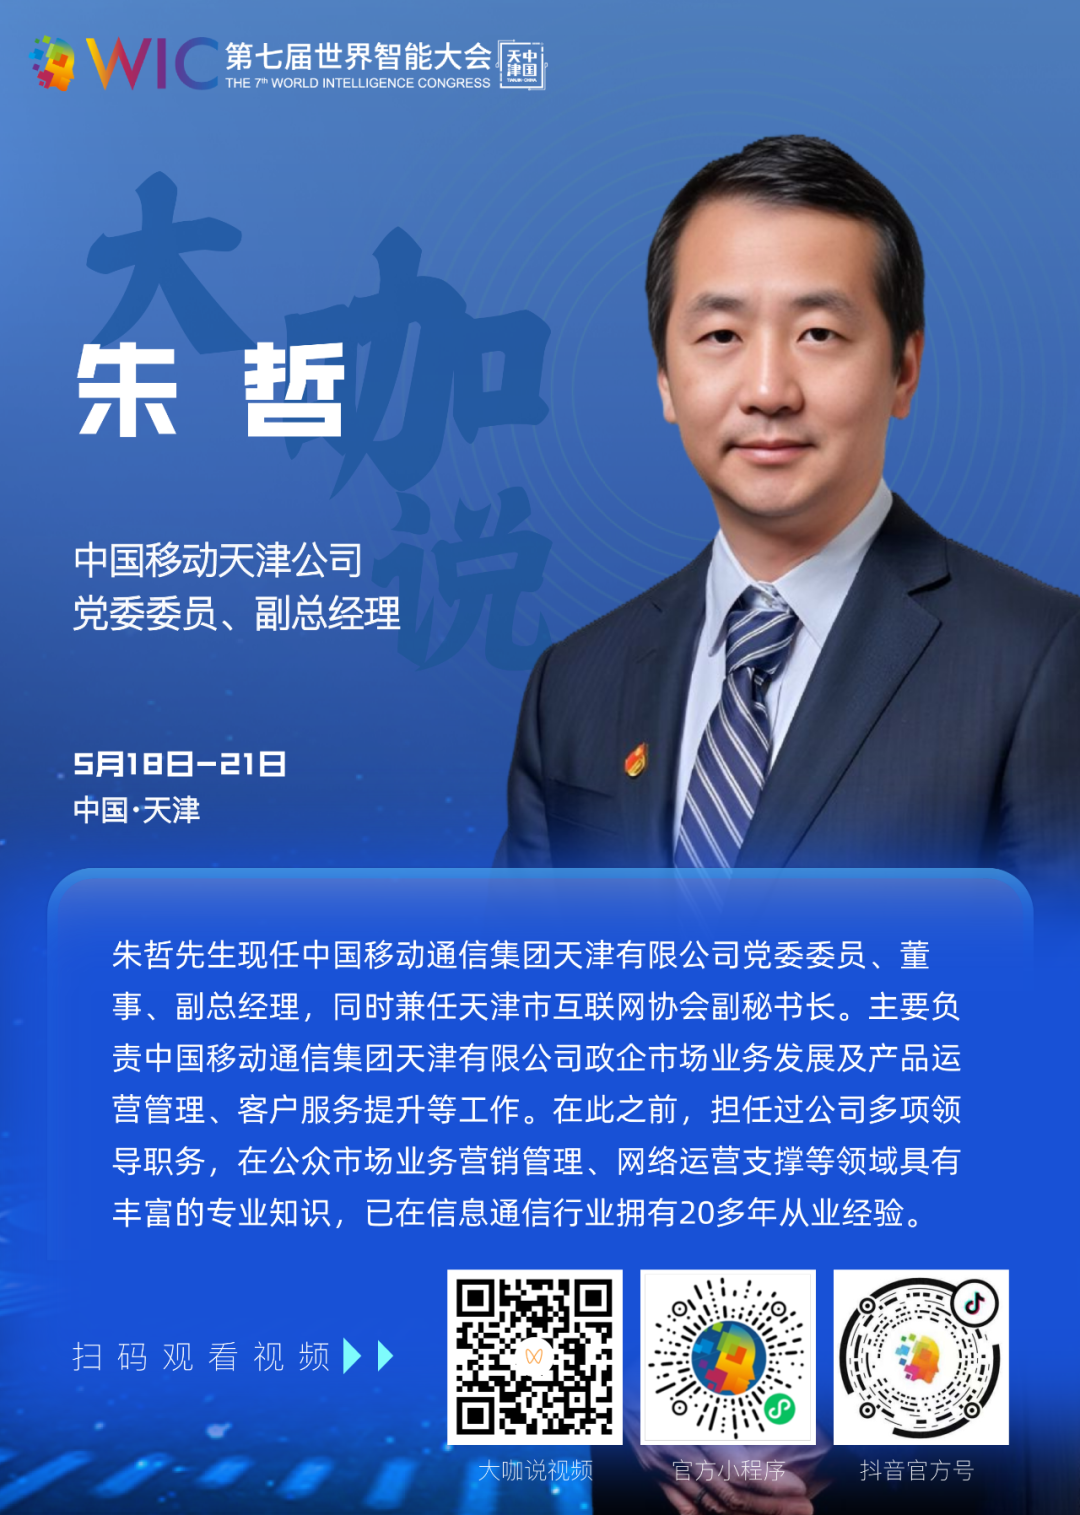 【大咖说】中国移动天津公司党委委员、副总经理朱哲：让网络化、数字化、智能化更好地为经济赋能、为城市增辉、为生活添彩